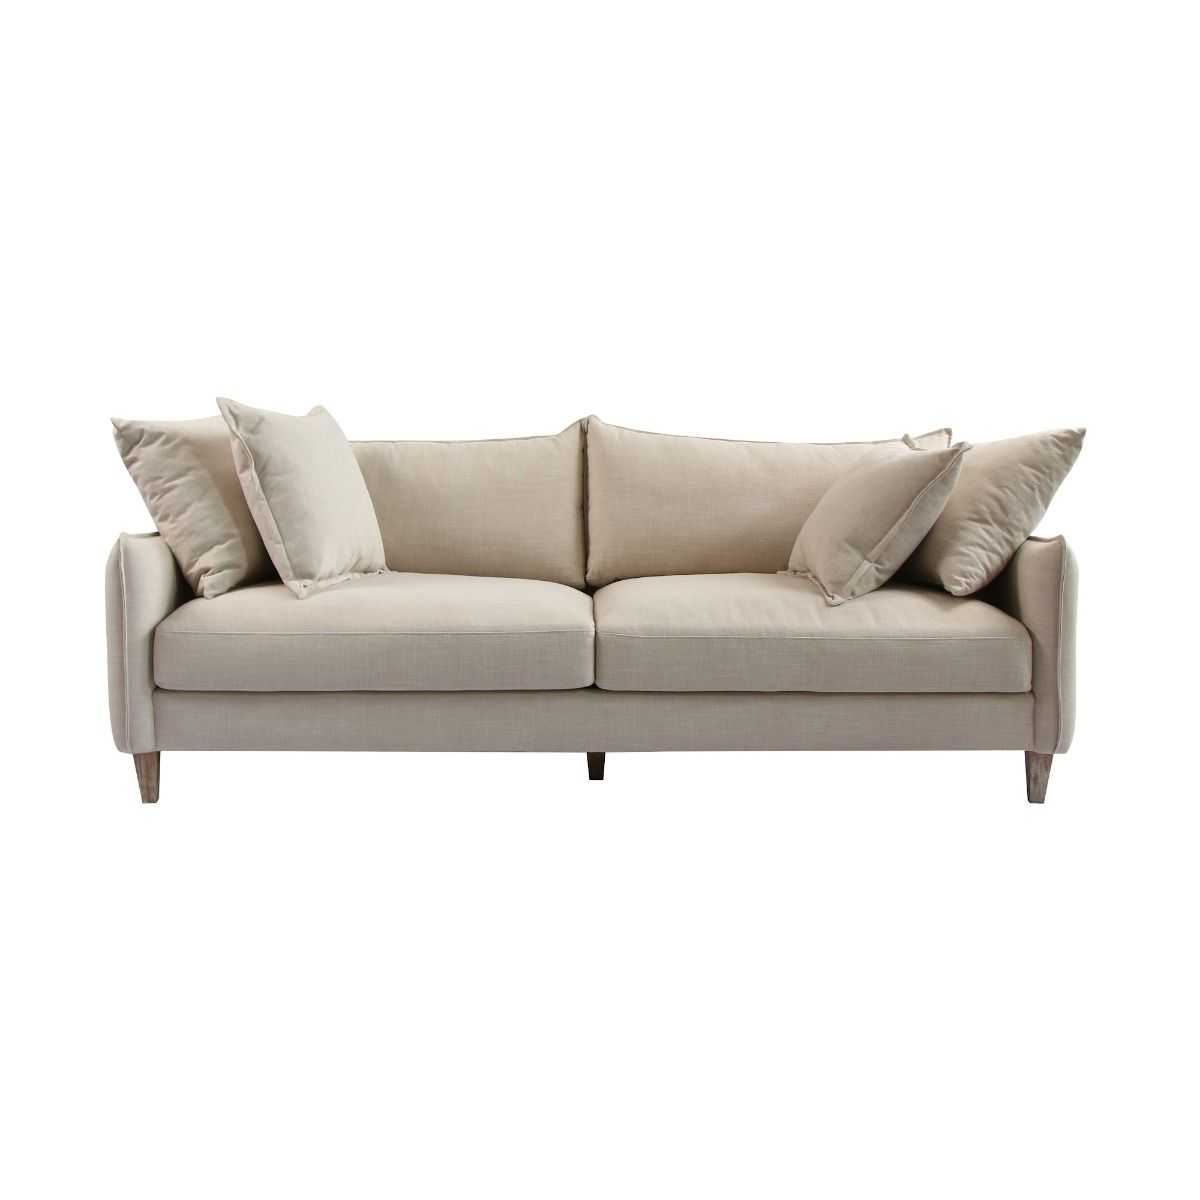 CR Lexington 3 Seater Fabric Sofa